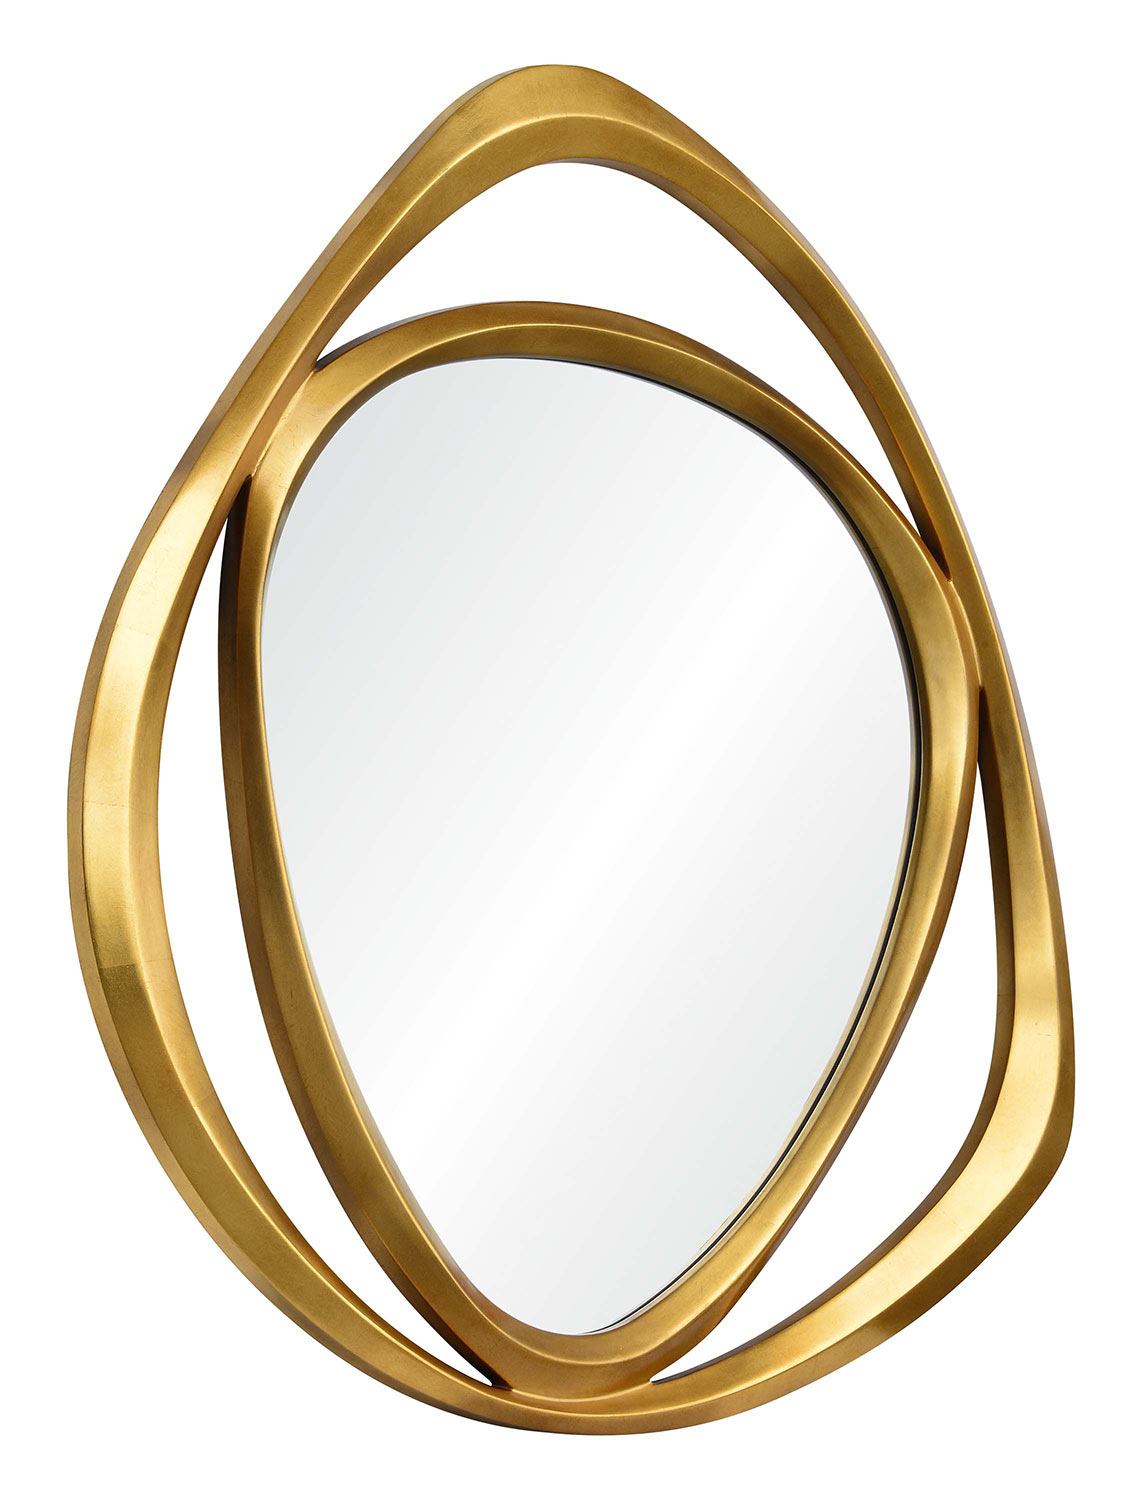 Ren-Wil Goldie Triangle Mirror - Gold Leaf